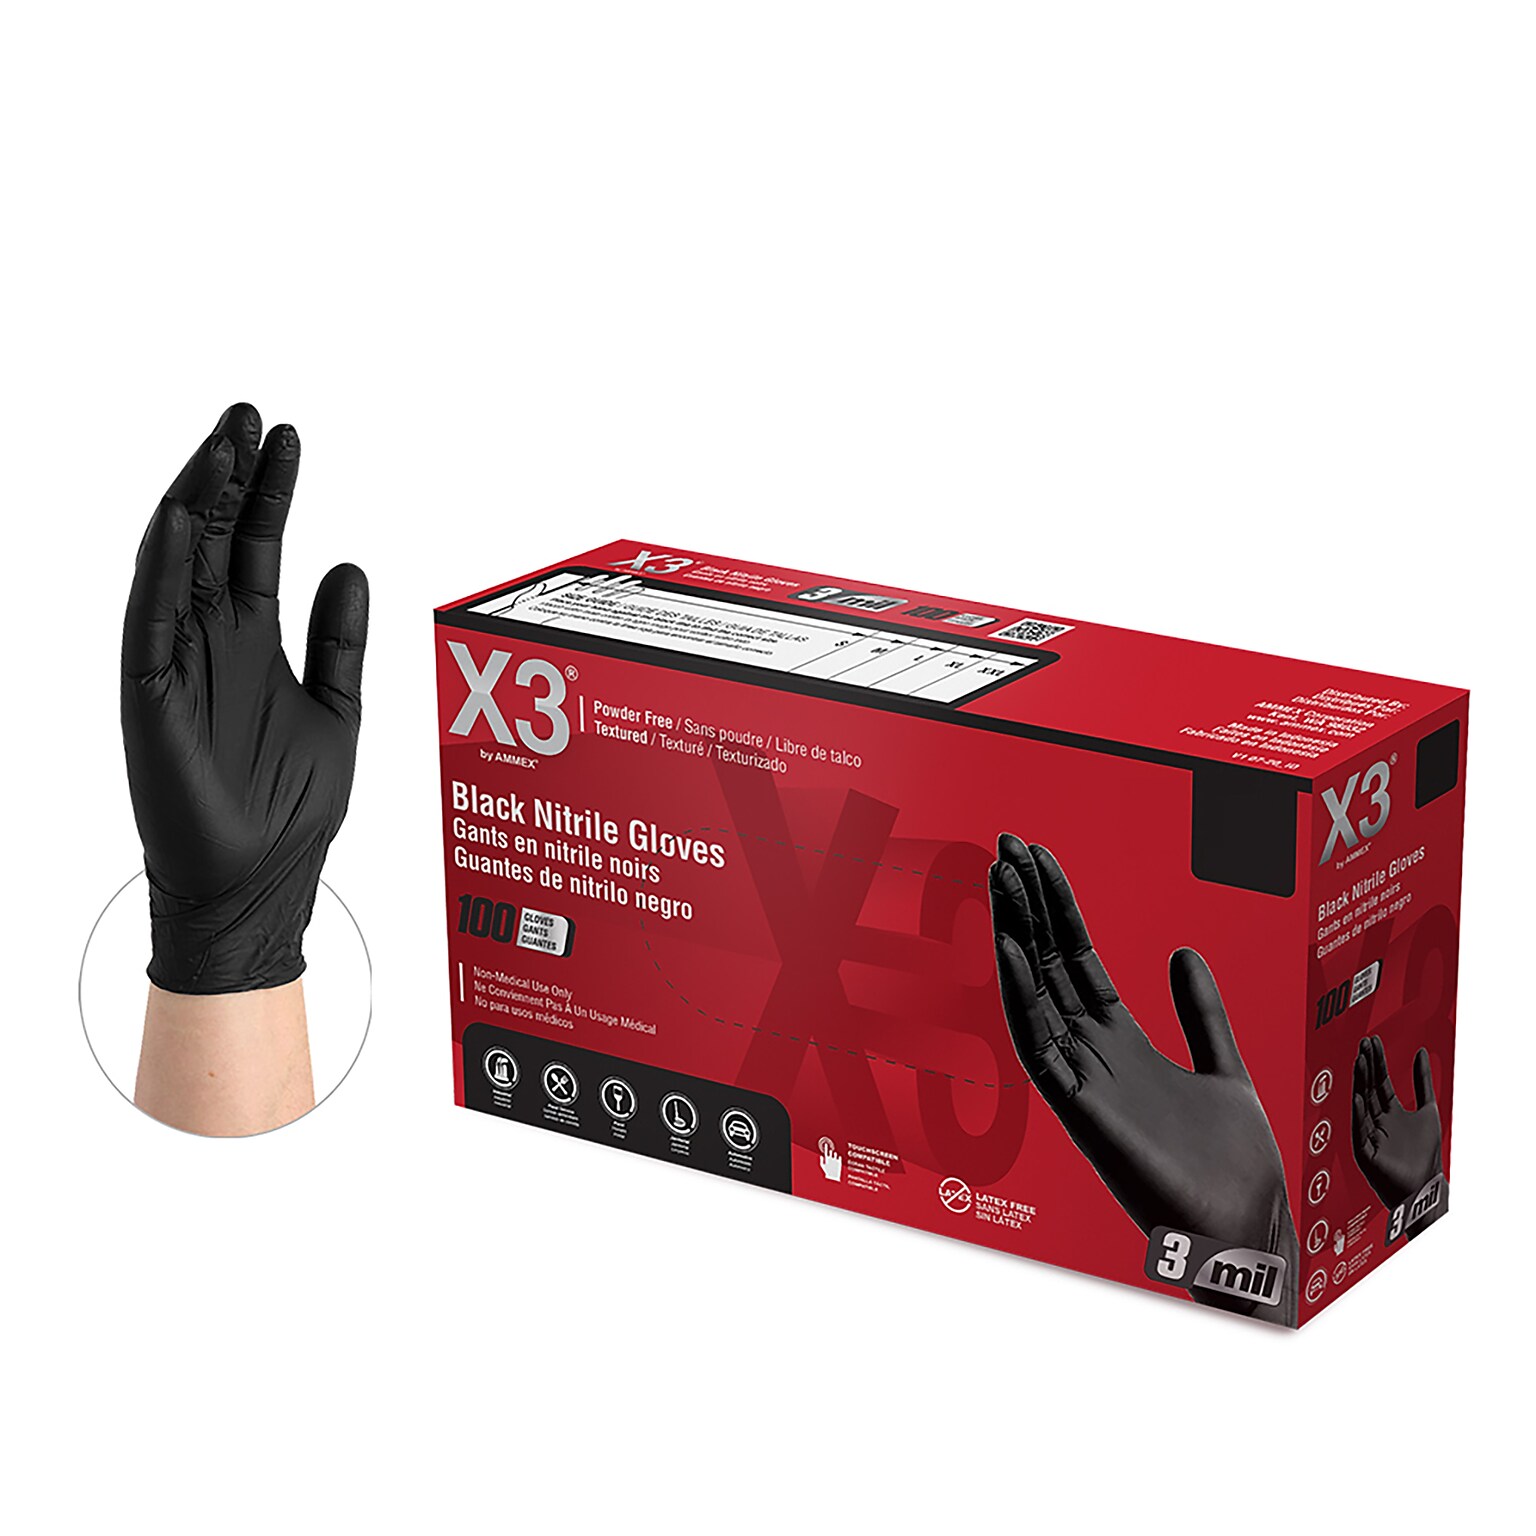 X3 Powder-Free Nitrile Gloves, Latex Free, XXL, Black, 100/Box, 10 Boxes/Carton (BX349100XX)